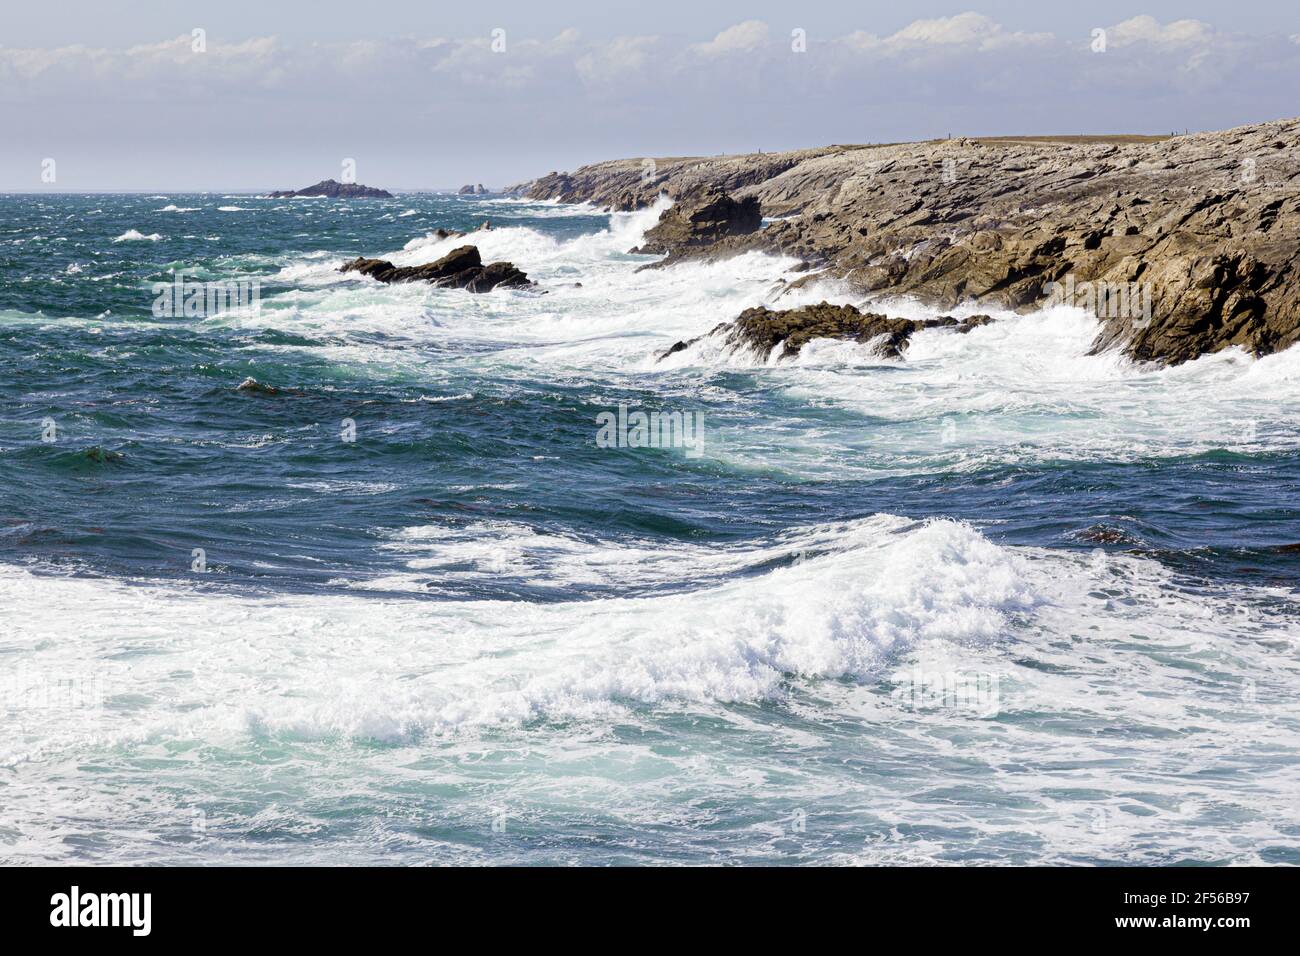 La costa occidental de la península de Quiberon - La Côte Sauvage - a mendigar er Goalennec, Bretaña, Francia Foto de stock